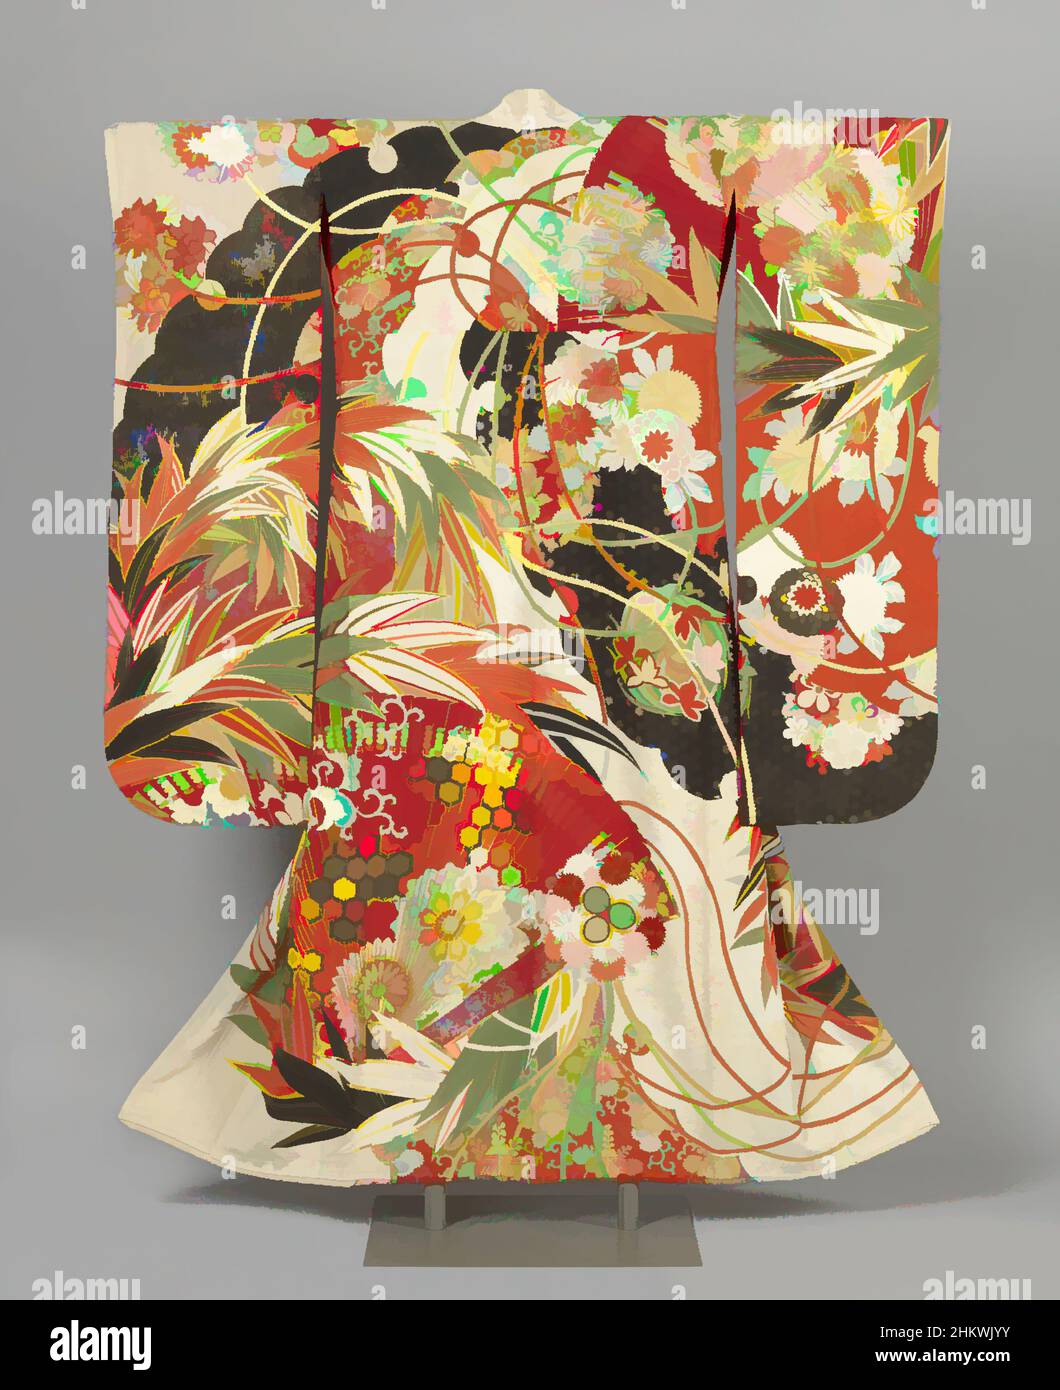 Arte ispirata da Kimono per una donna non sposata, kimono formale a maniche lunghe per una giovane donna non sposata (furisode), decorata dappertutto con grandi ventilatori, fiocchi di neve, bambù, crisantemo e altri motivi vegetali, con bulbi su corde che attraversano la composizione. Crema di seta bianca con, opere classiche modernizzate da Artotop con un tocco di modernità. Forme, colore e valore, impatto visivo accattivante sulle emozioni artistiche attraverso la libertà delle opere d'arte in modo contemporaneo. Un messaggio senza tempo che persegue una nuova direzione selvaggiamente creativa. Artisti che si rivolgono al supporto digitale e creano l'NFT Artotop Foto Stock